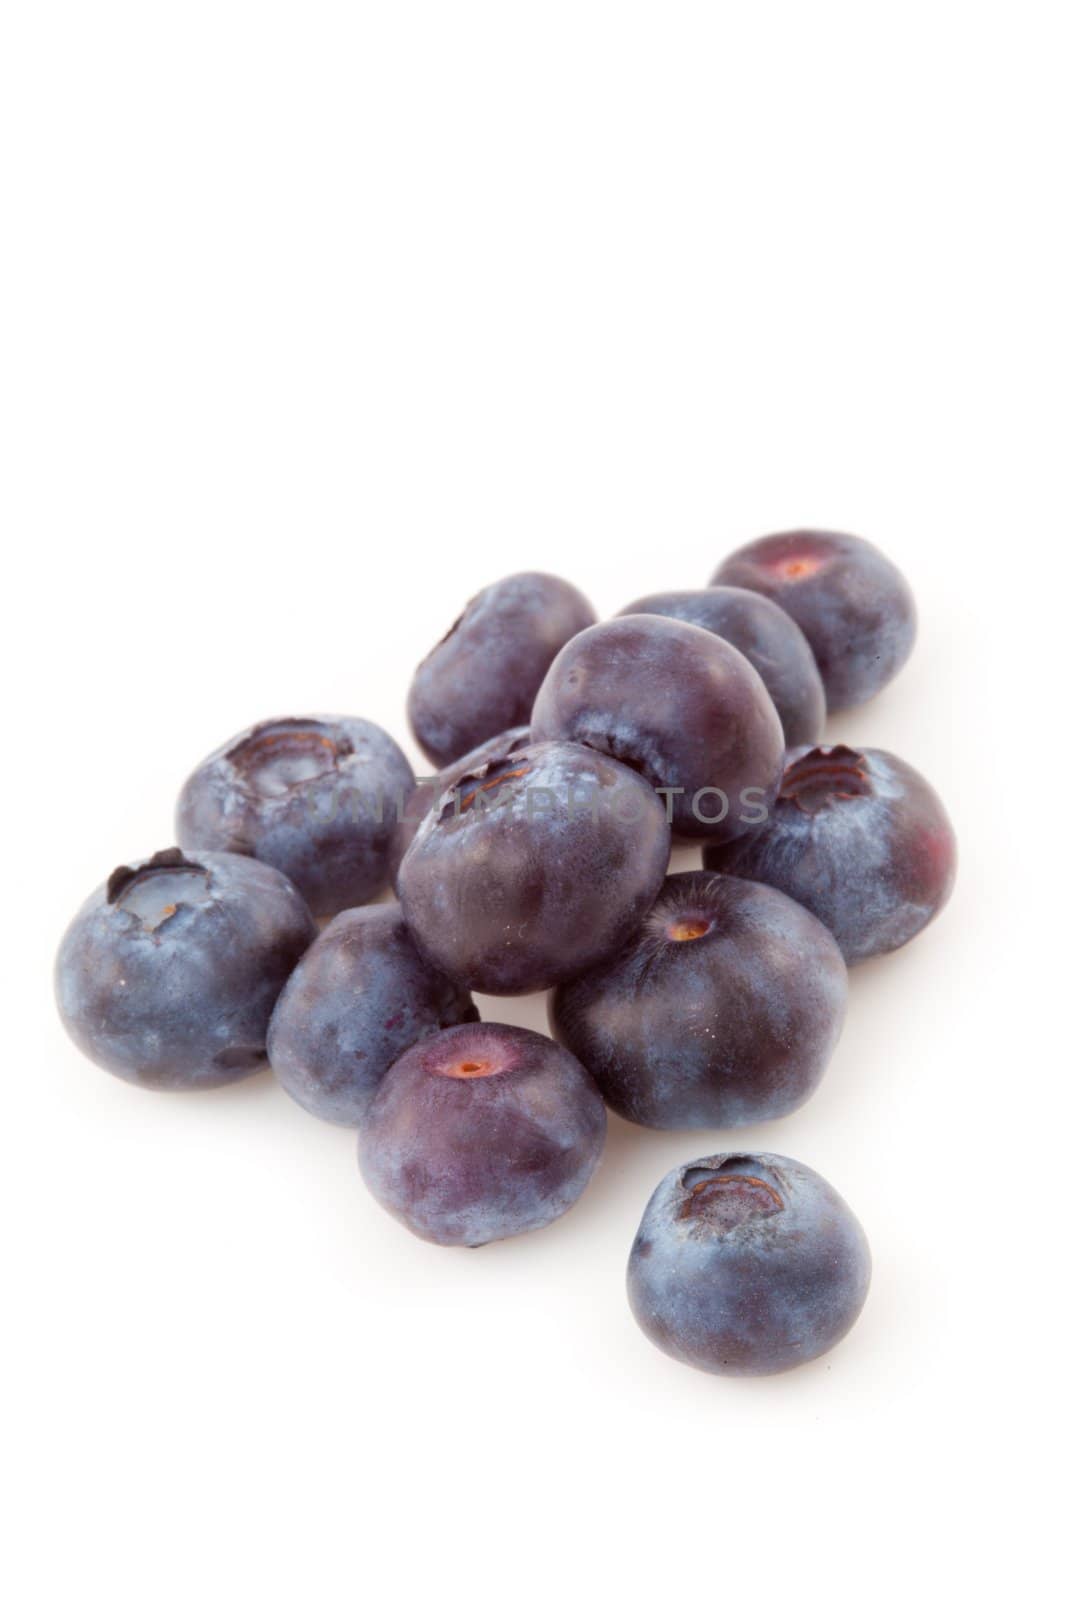 Blueberries by Wavebreakmedia